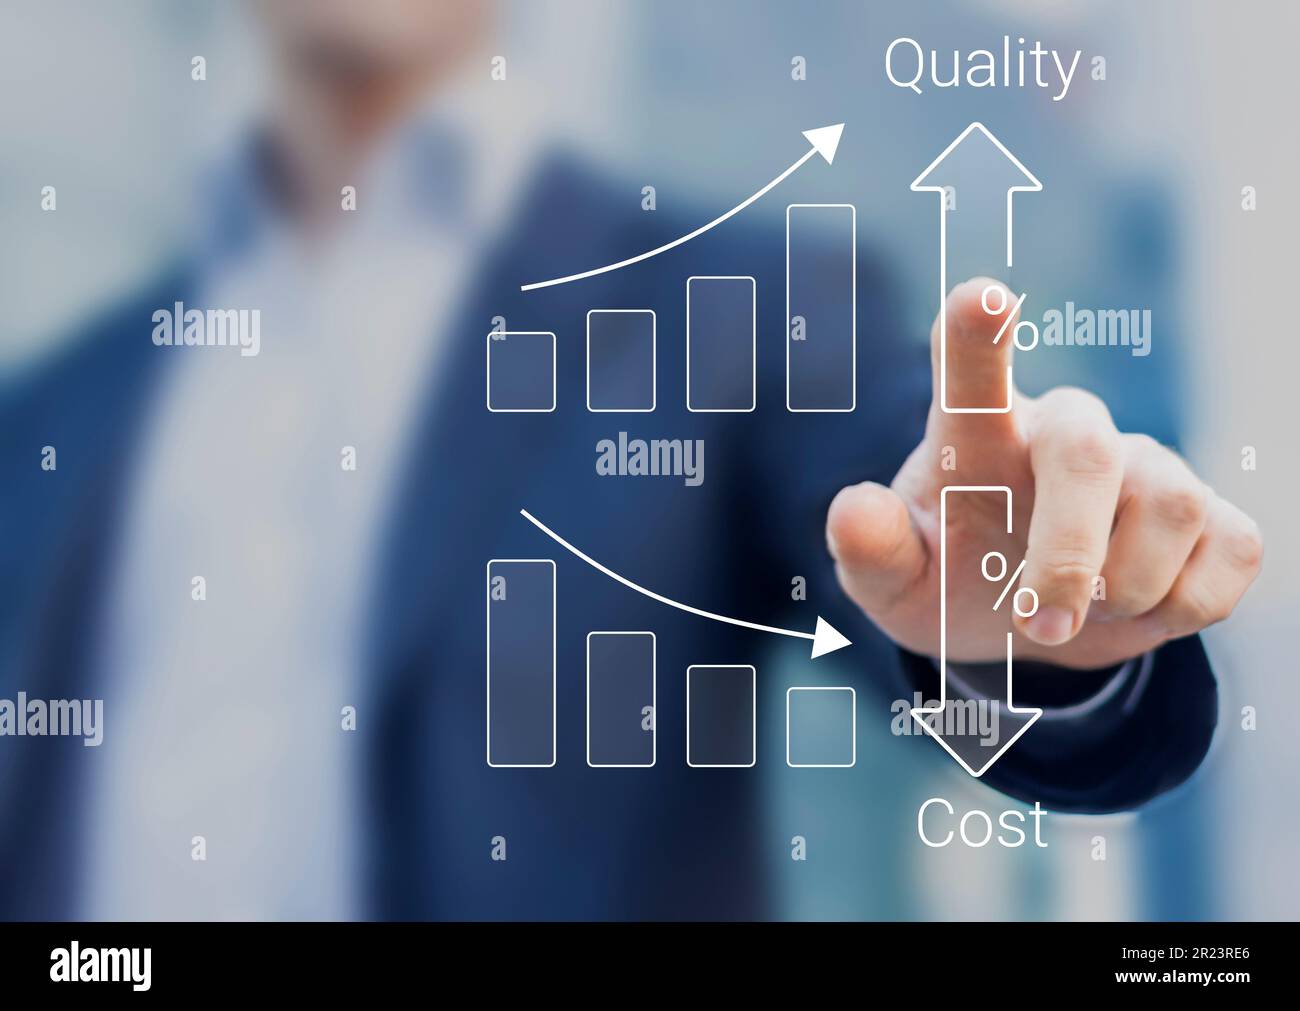 Ottimizzazione della qualità e dei costi per prodotti o servizi per migliorare la soddisfazione dei clienti e le prestazioni aziendali. Concetto di contatto della persona. Succ Foto Stock